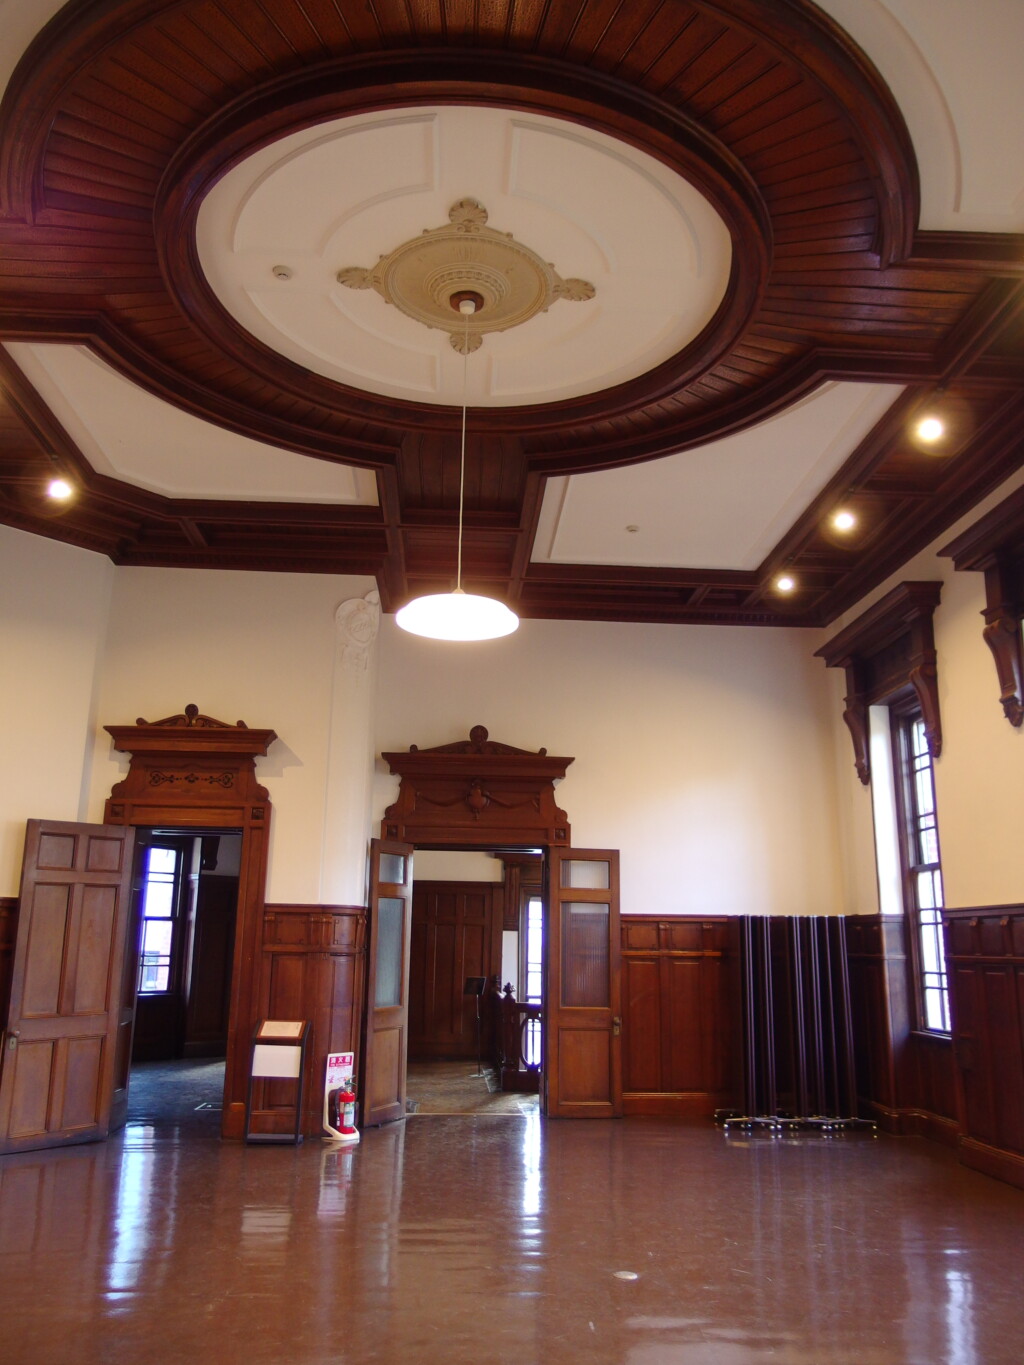 岩手銀行旧本店赤レンガ館漆喰と木の対比が美しい旧会議室多目的ホール